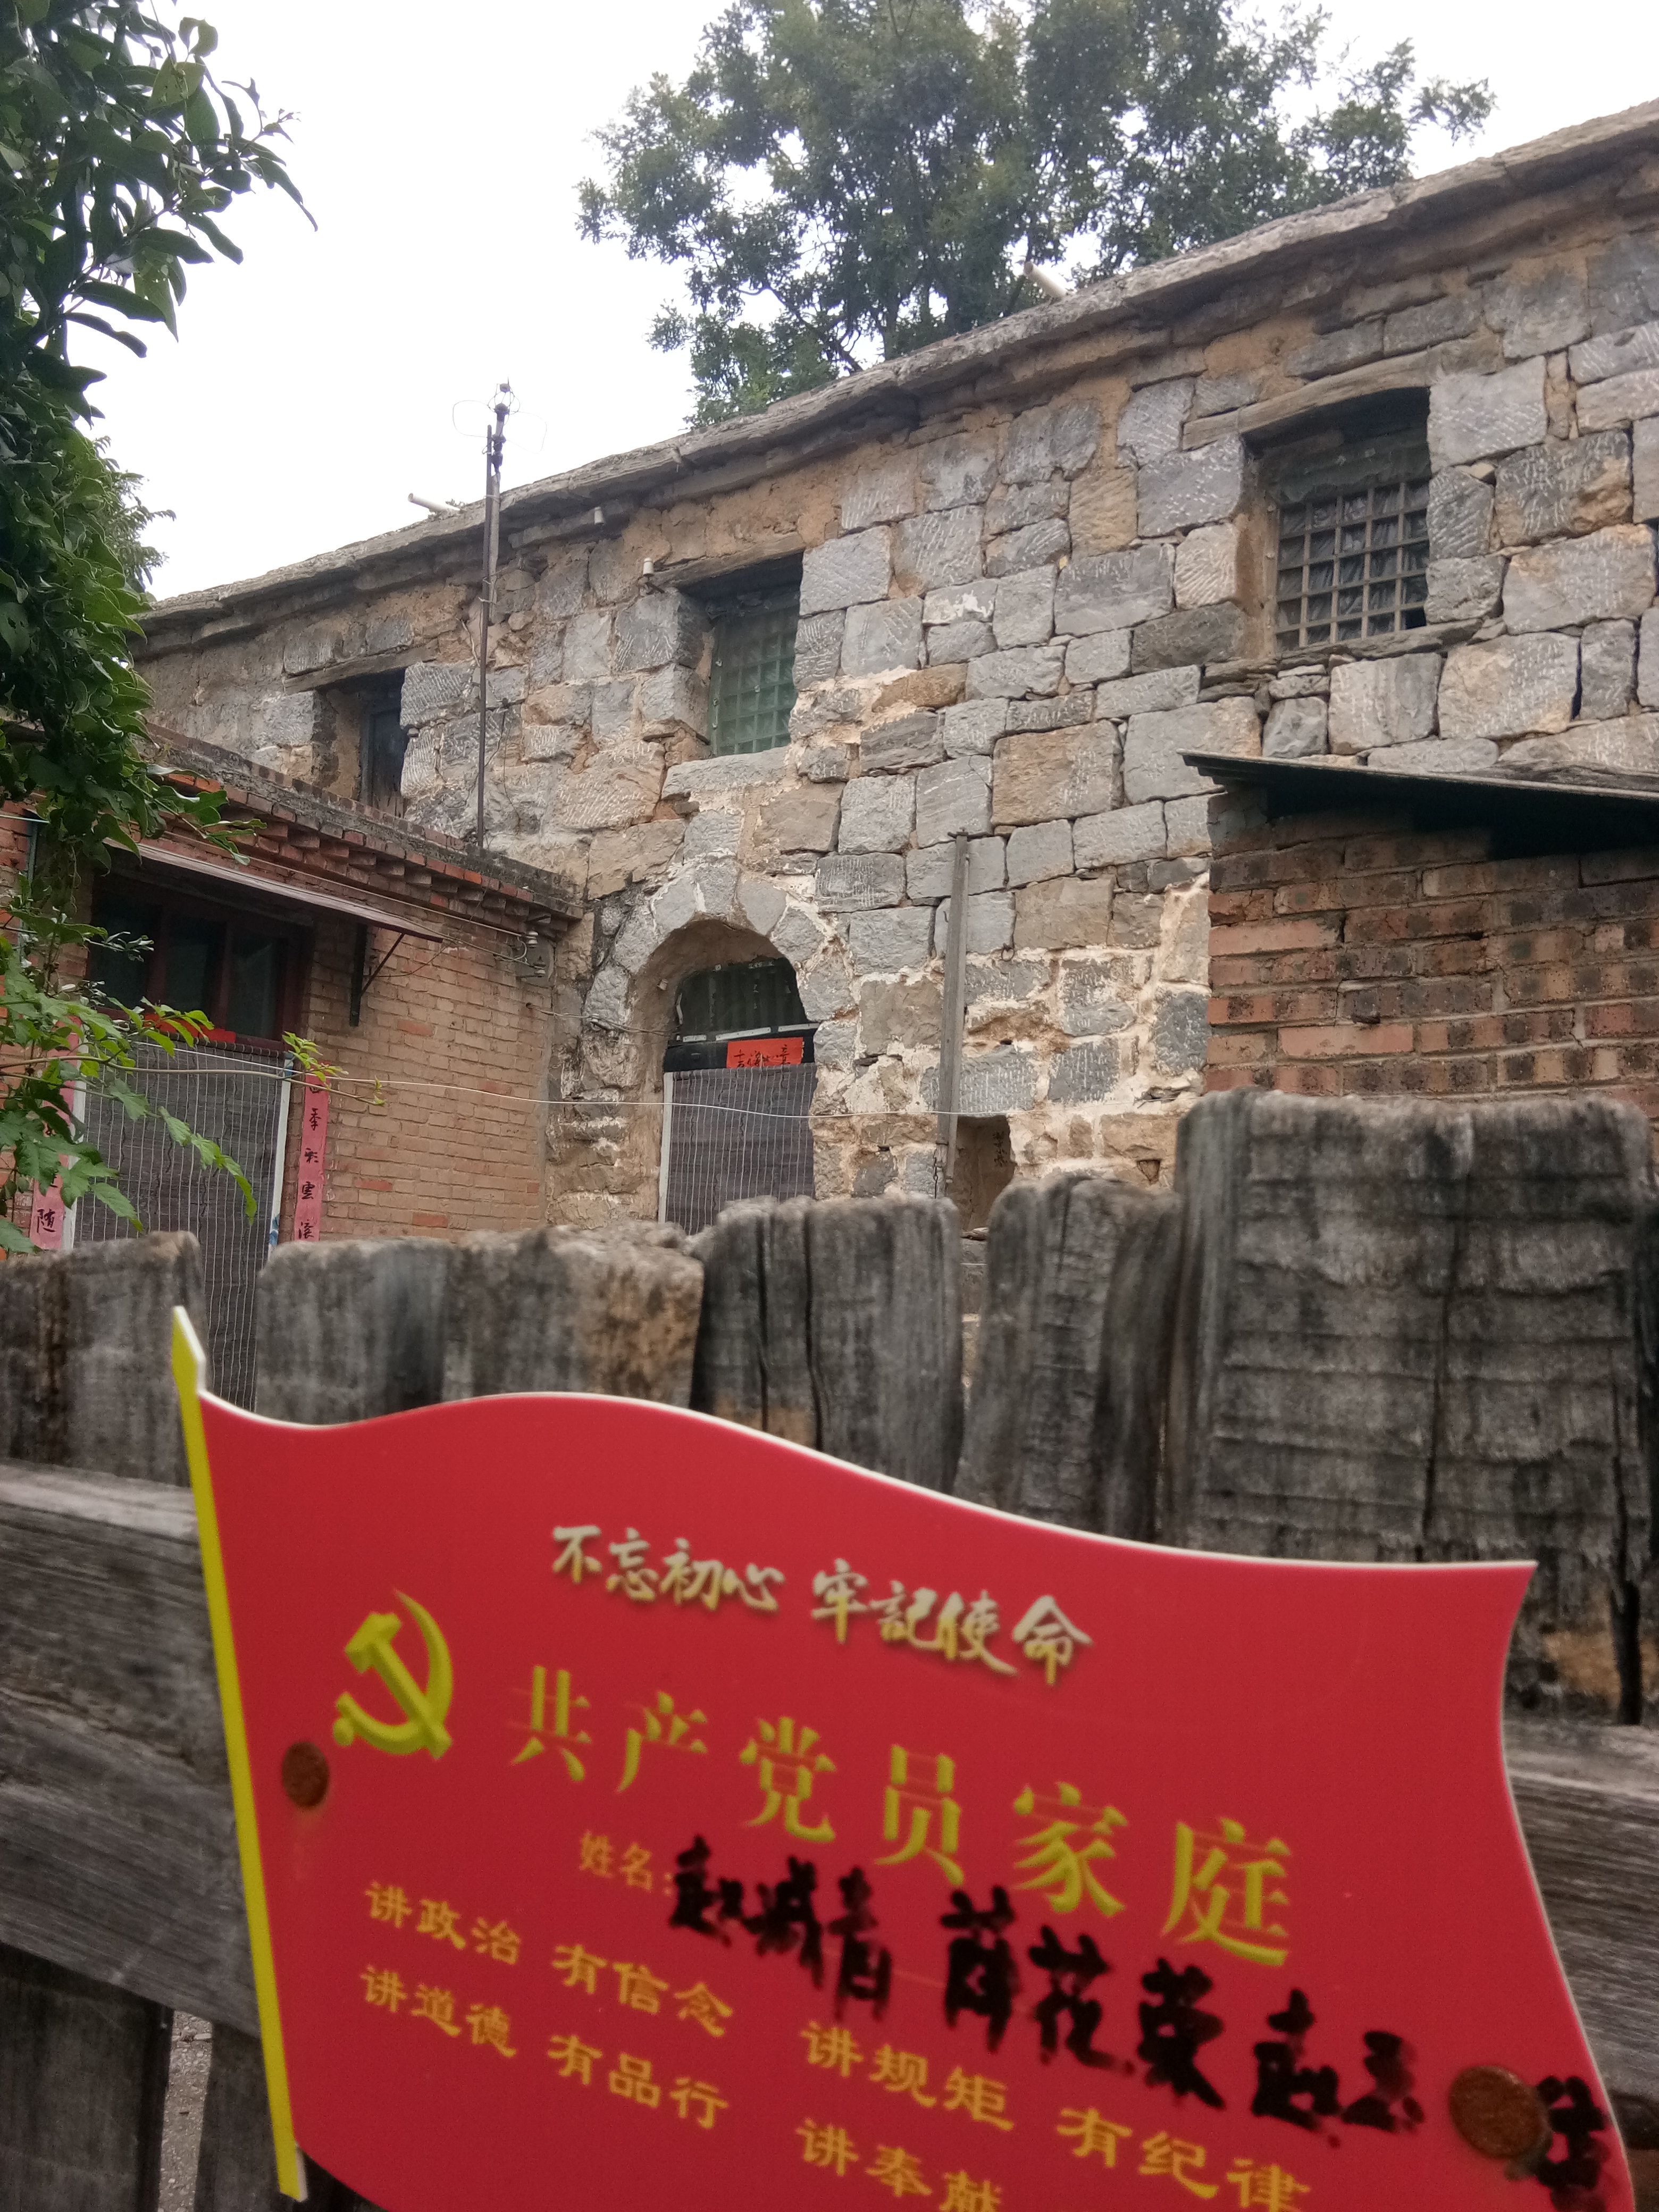 暑假学生红色旅游地之二:焦作太行山革命老区中站区十二会村